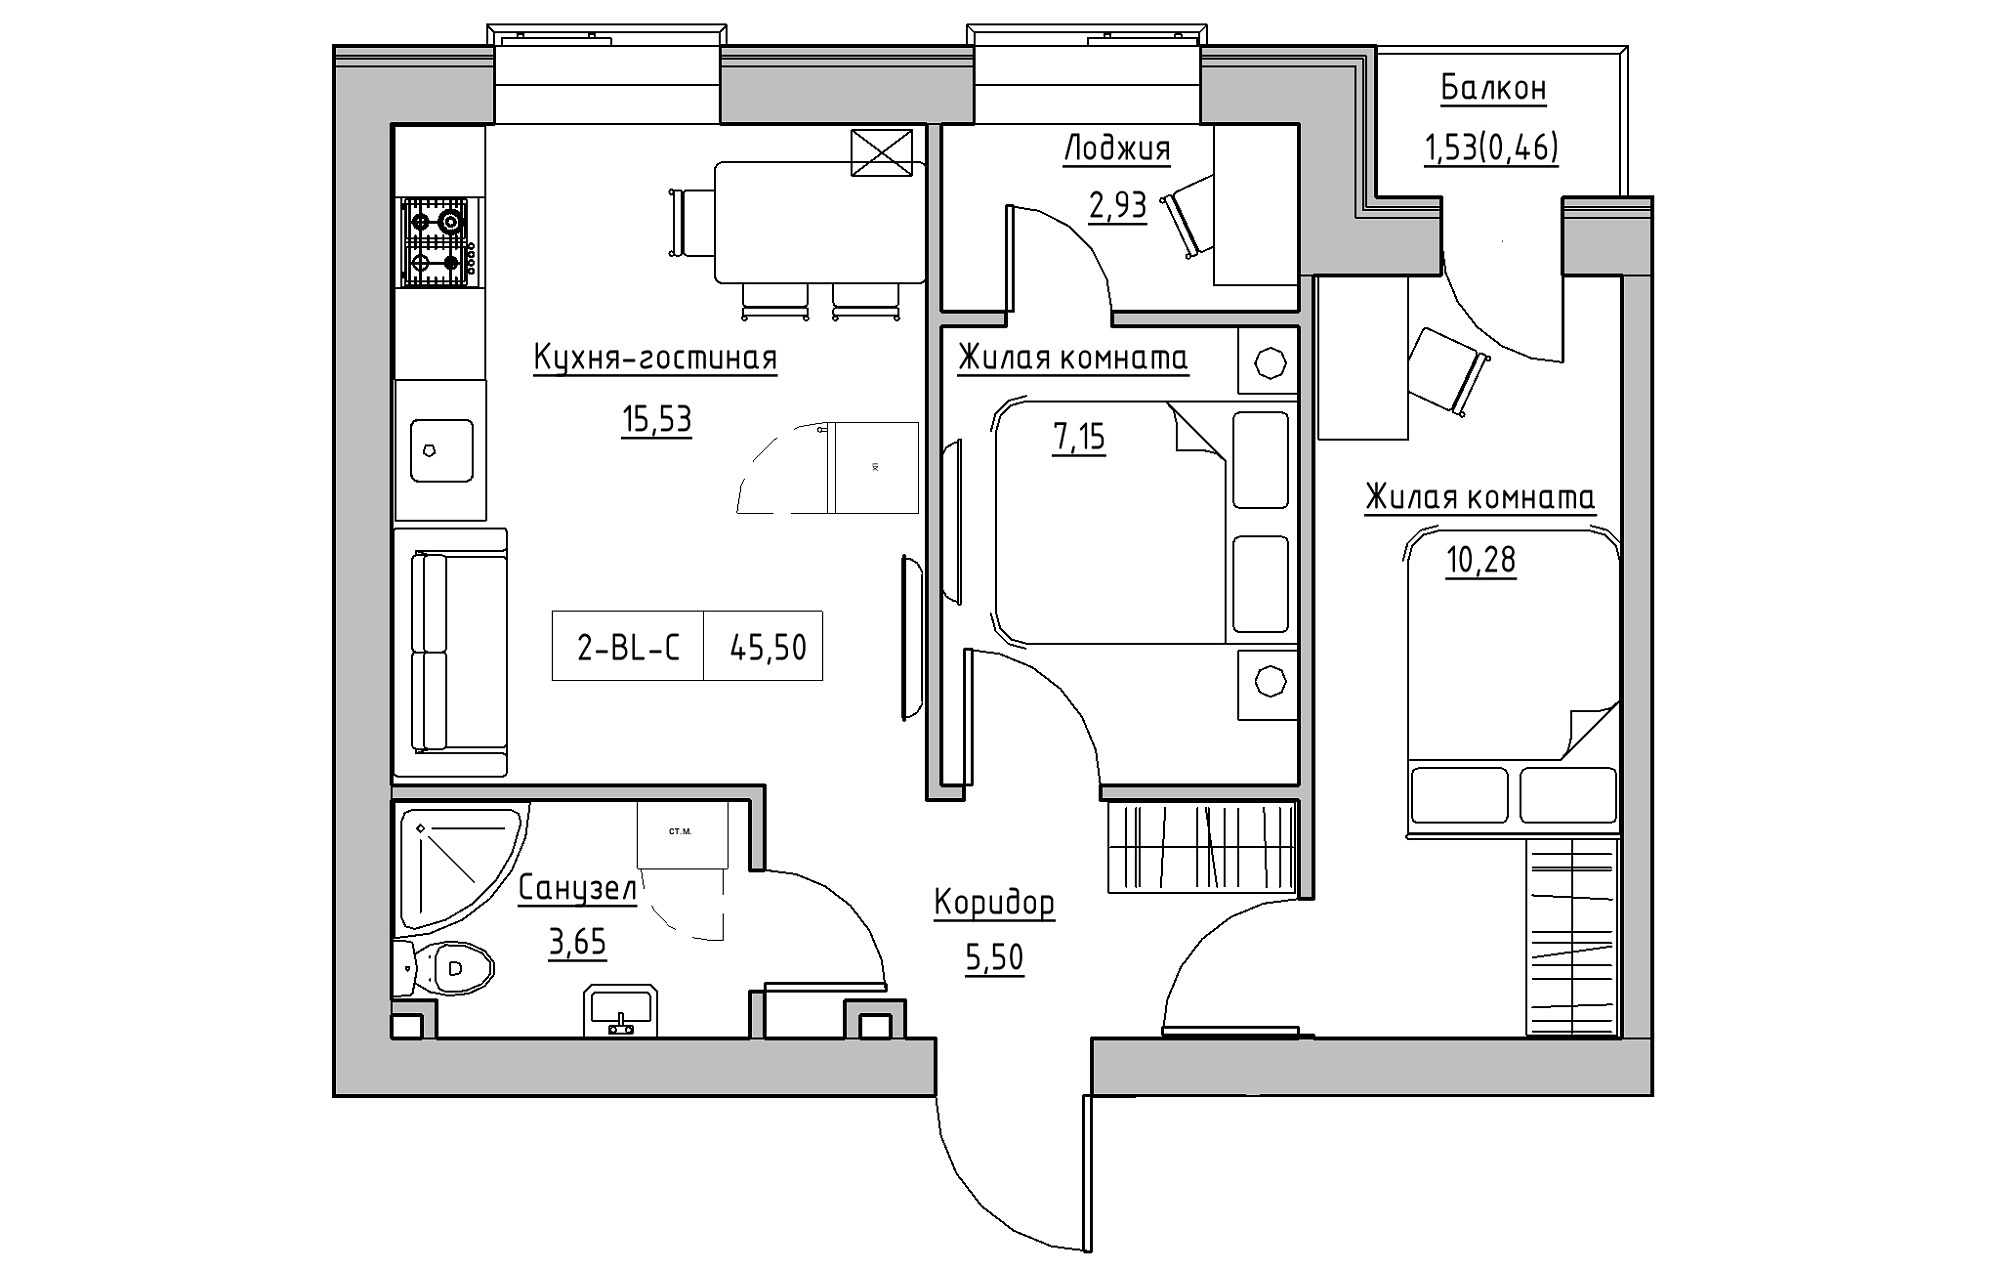 Планировка 2-к квартира площей 45.5м2, KS-018-04/0008.